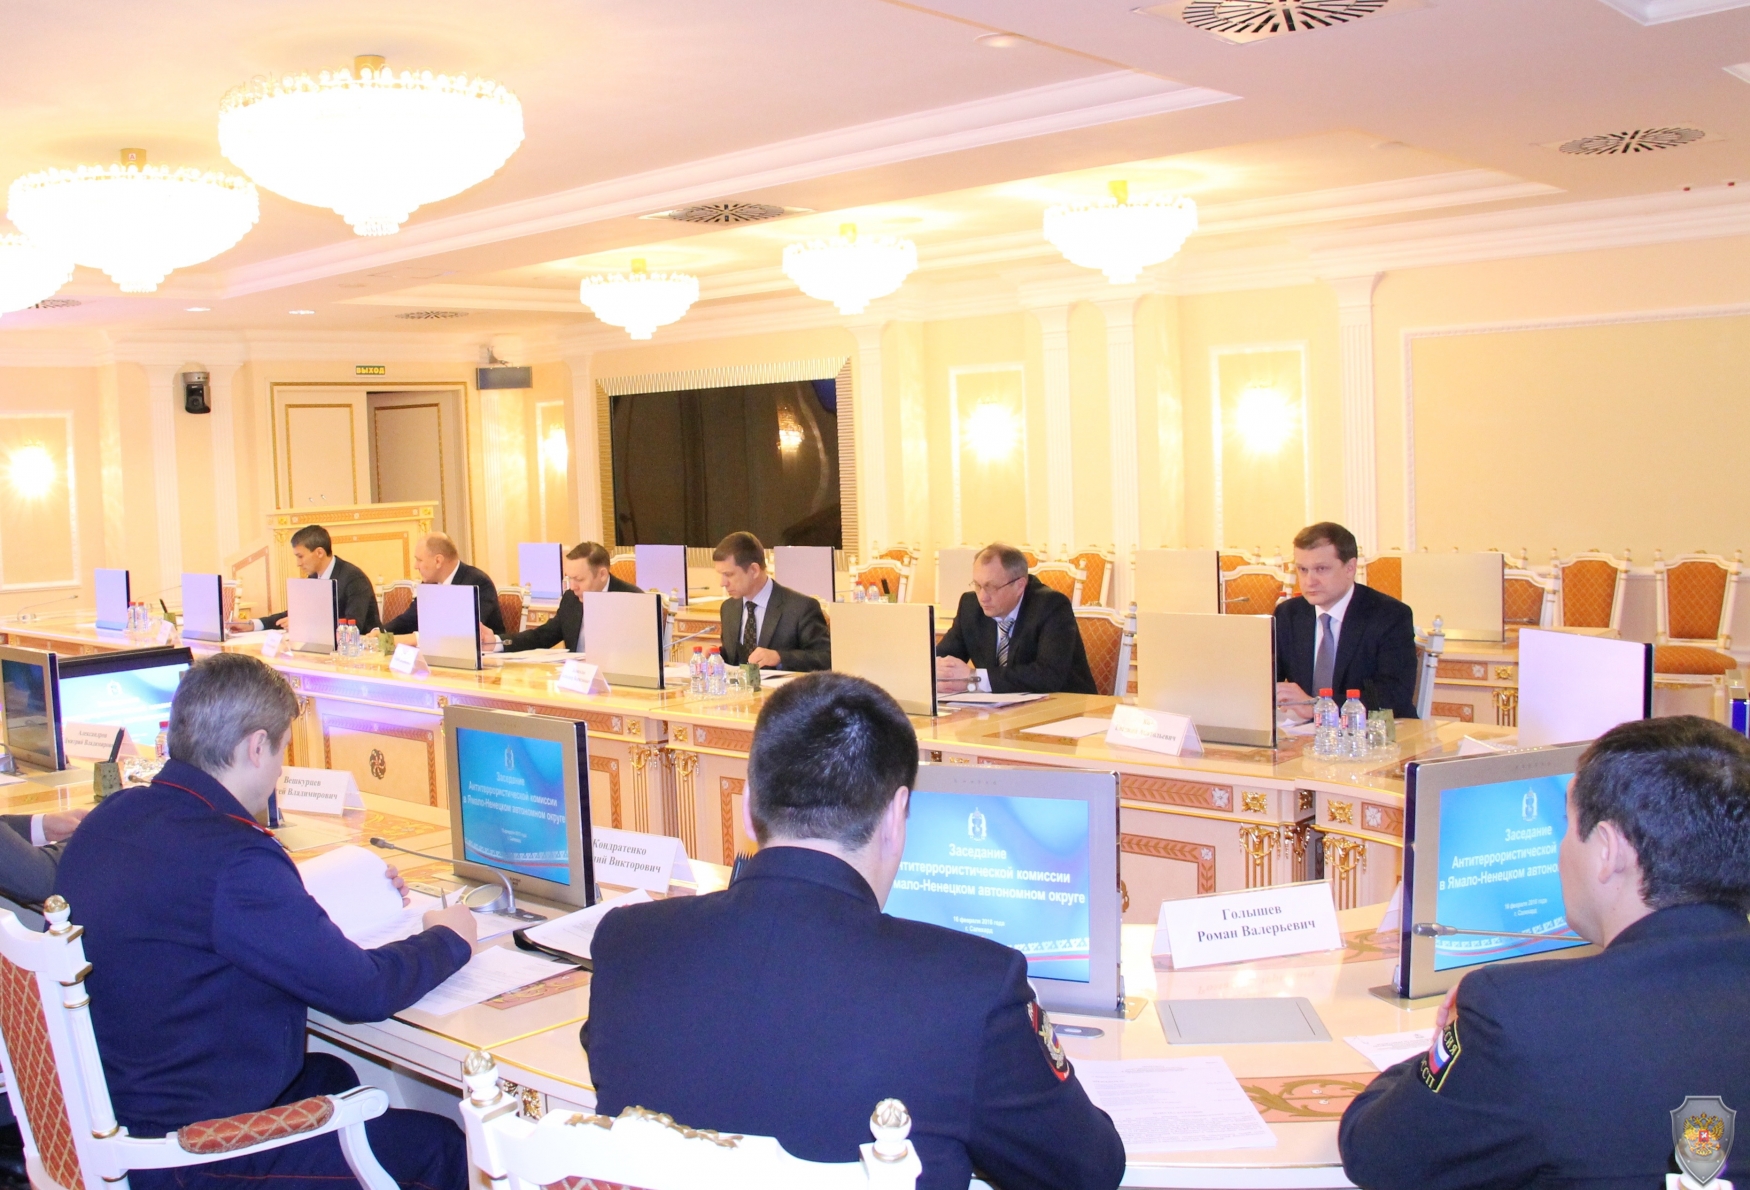 Заседание окружной антитеррористической комиссии состоялось в Салехарде